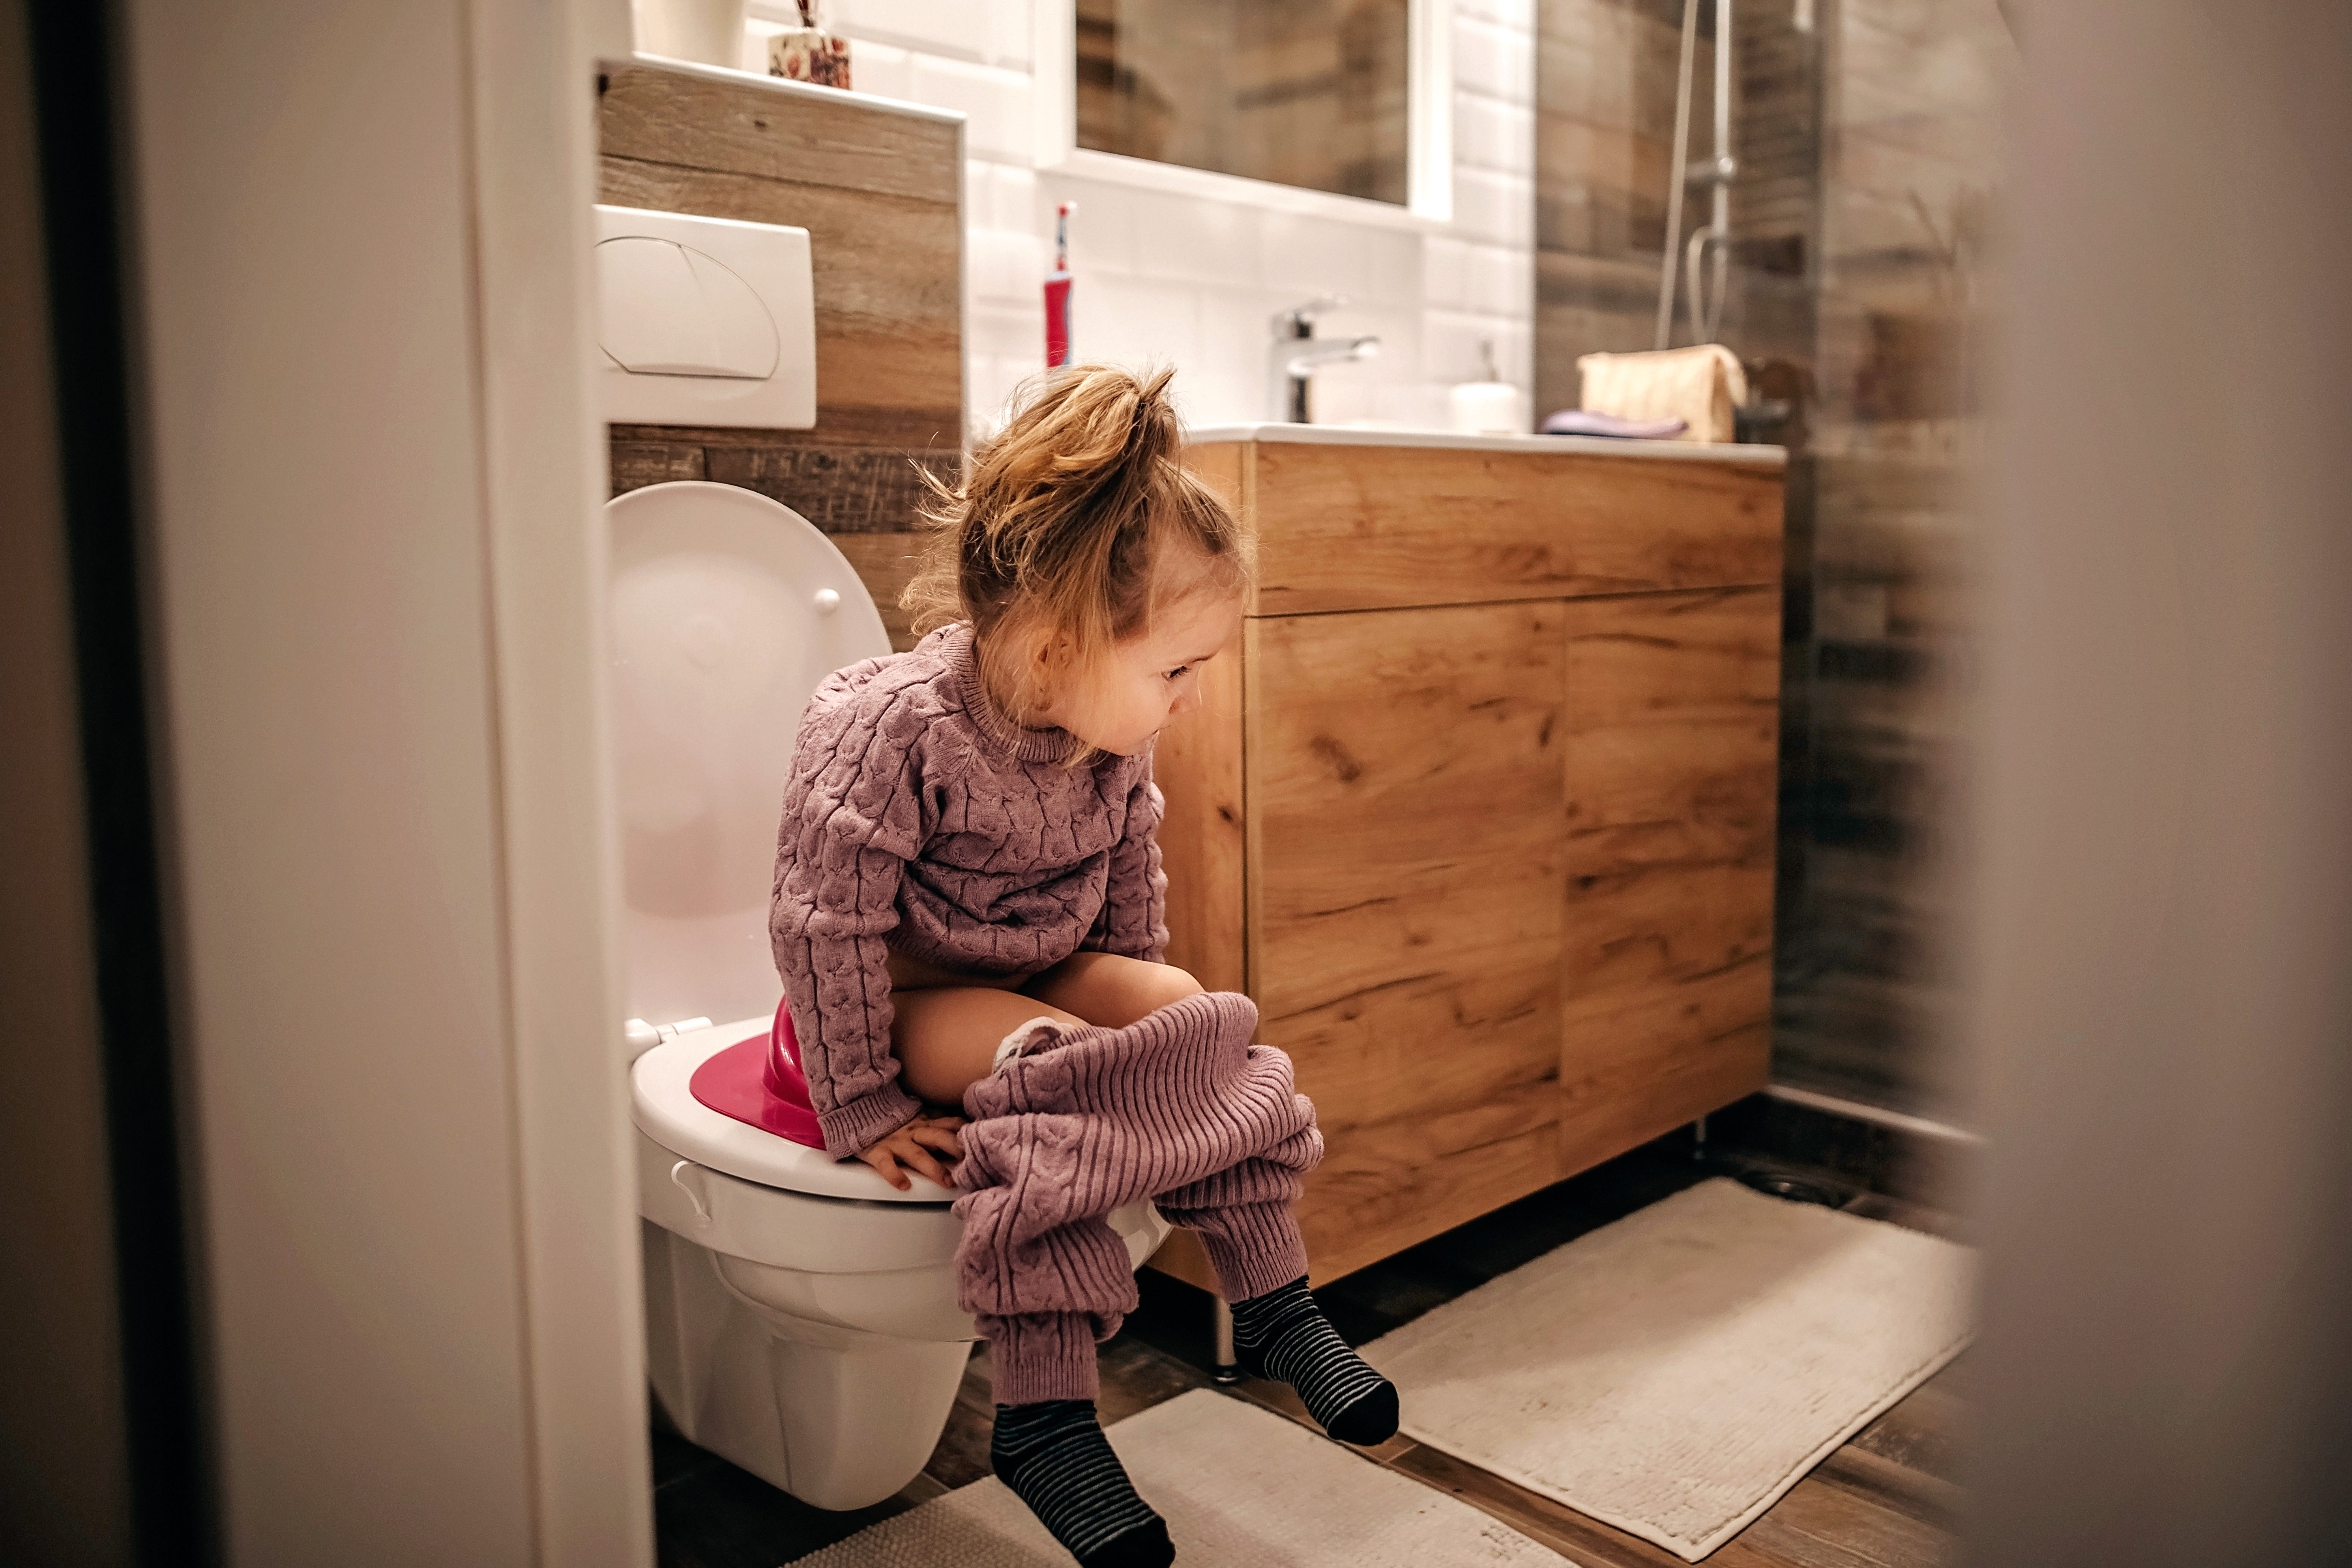 Criança usando o banheiro  (Foto: Getty Images)